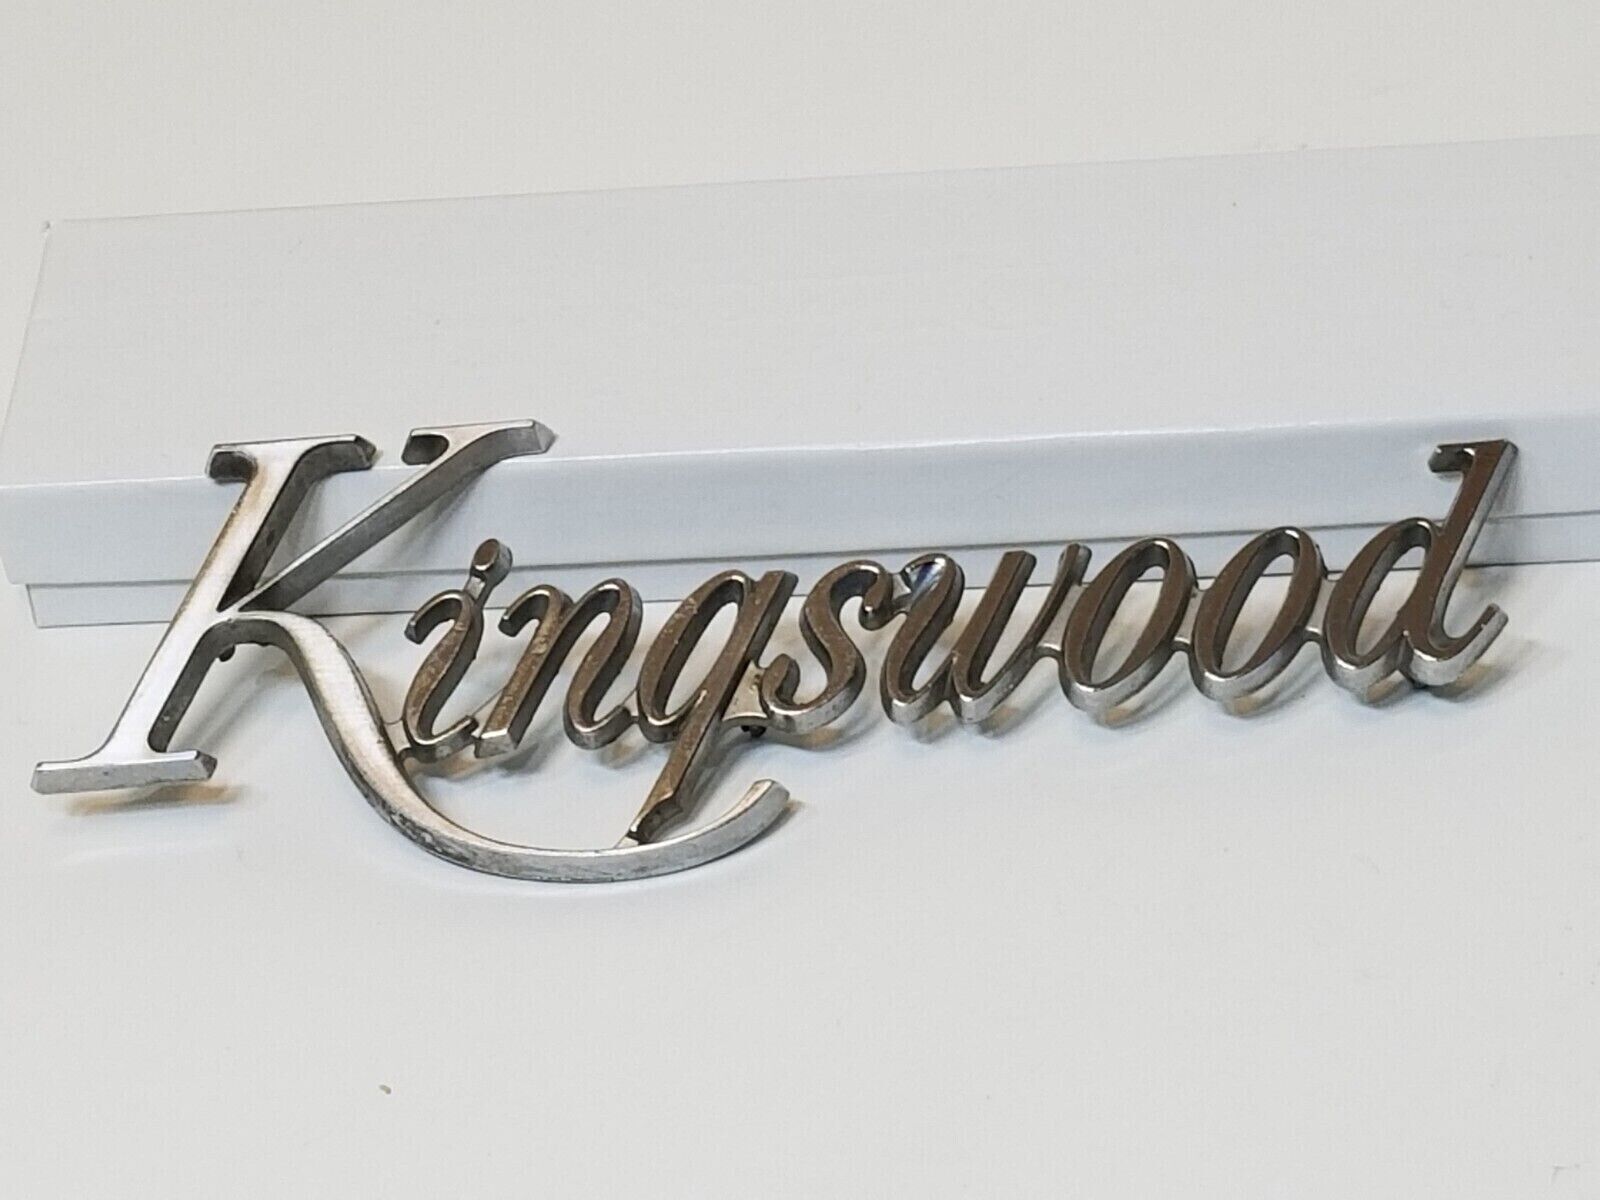 Vintage Chevrolet Chevy Kingswood Car Vehicle Emblem/Badge OEM 8737960